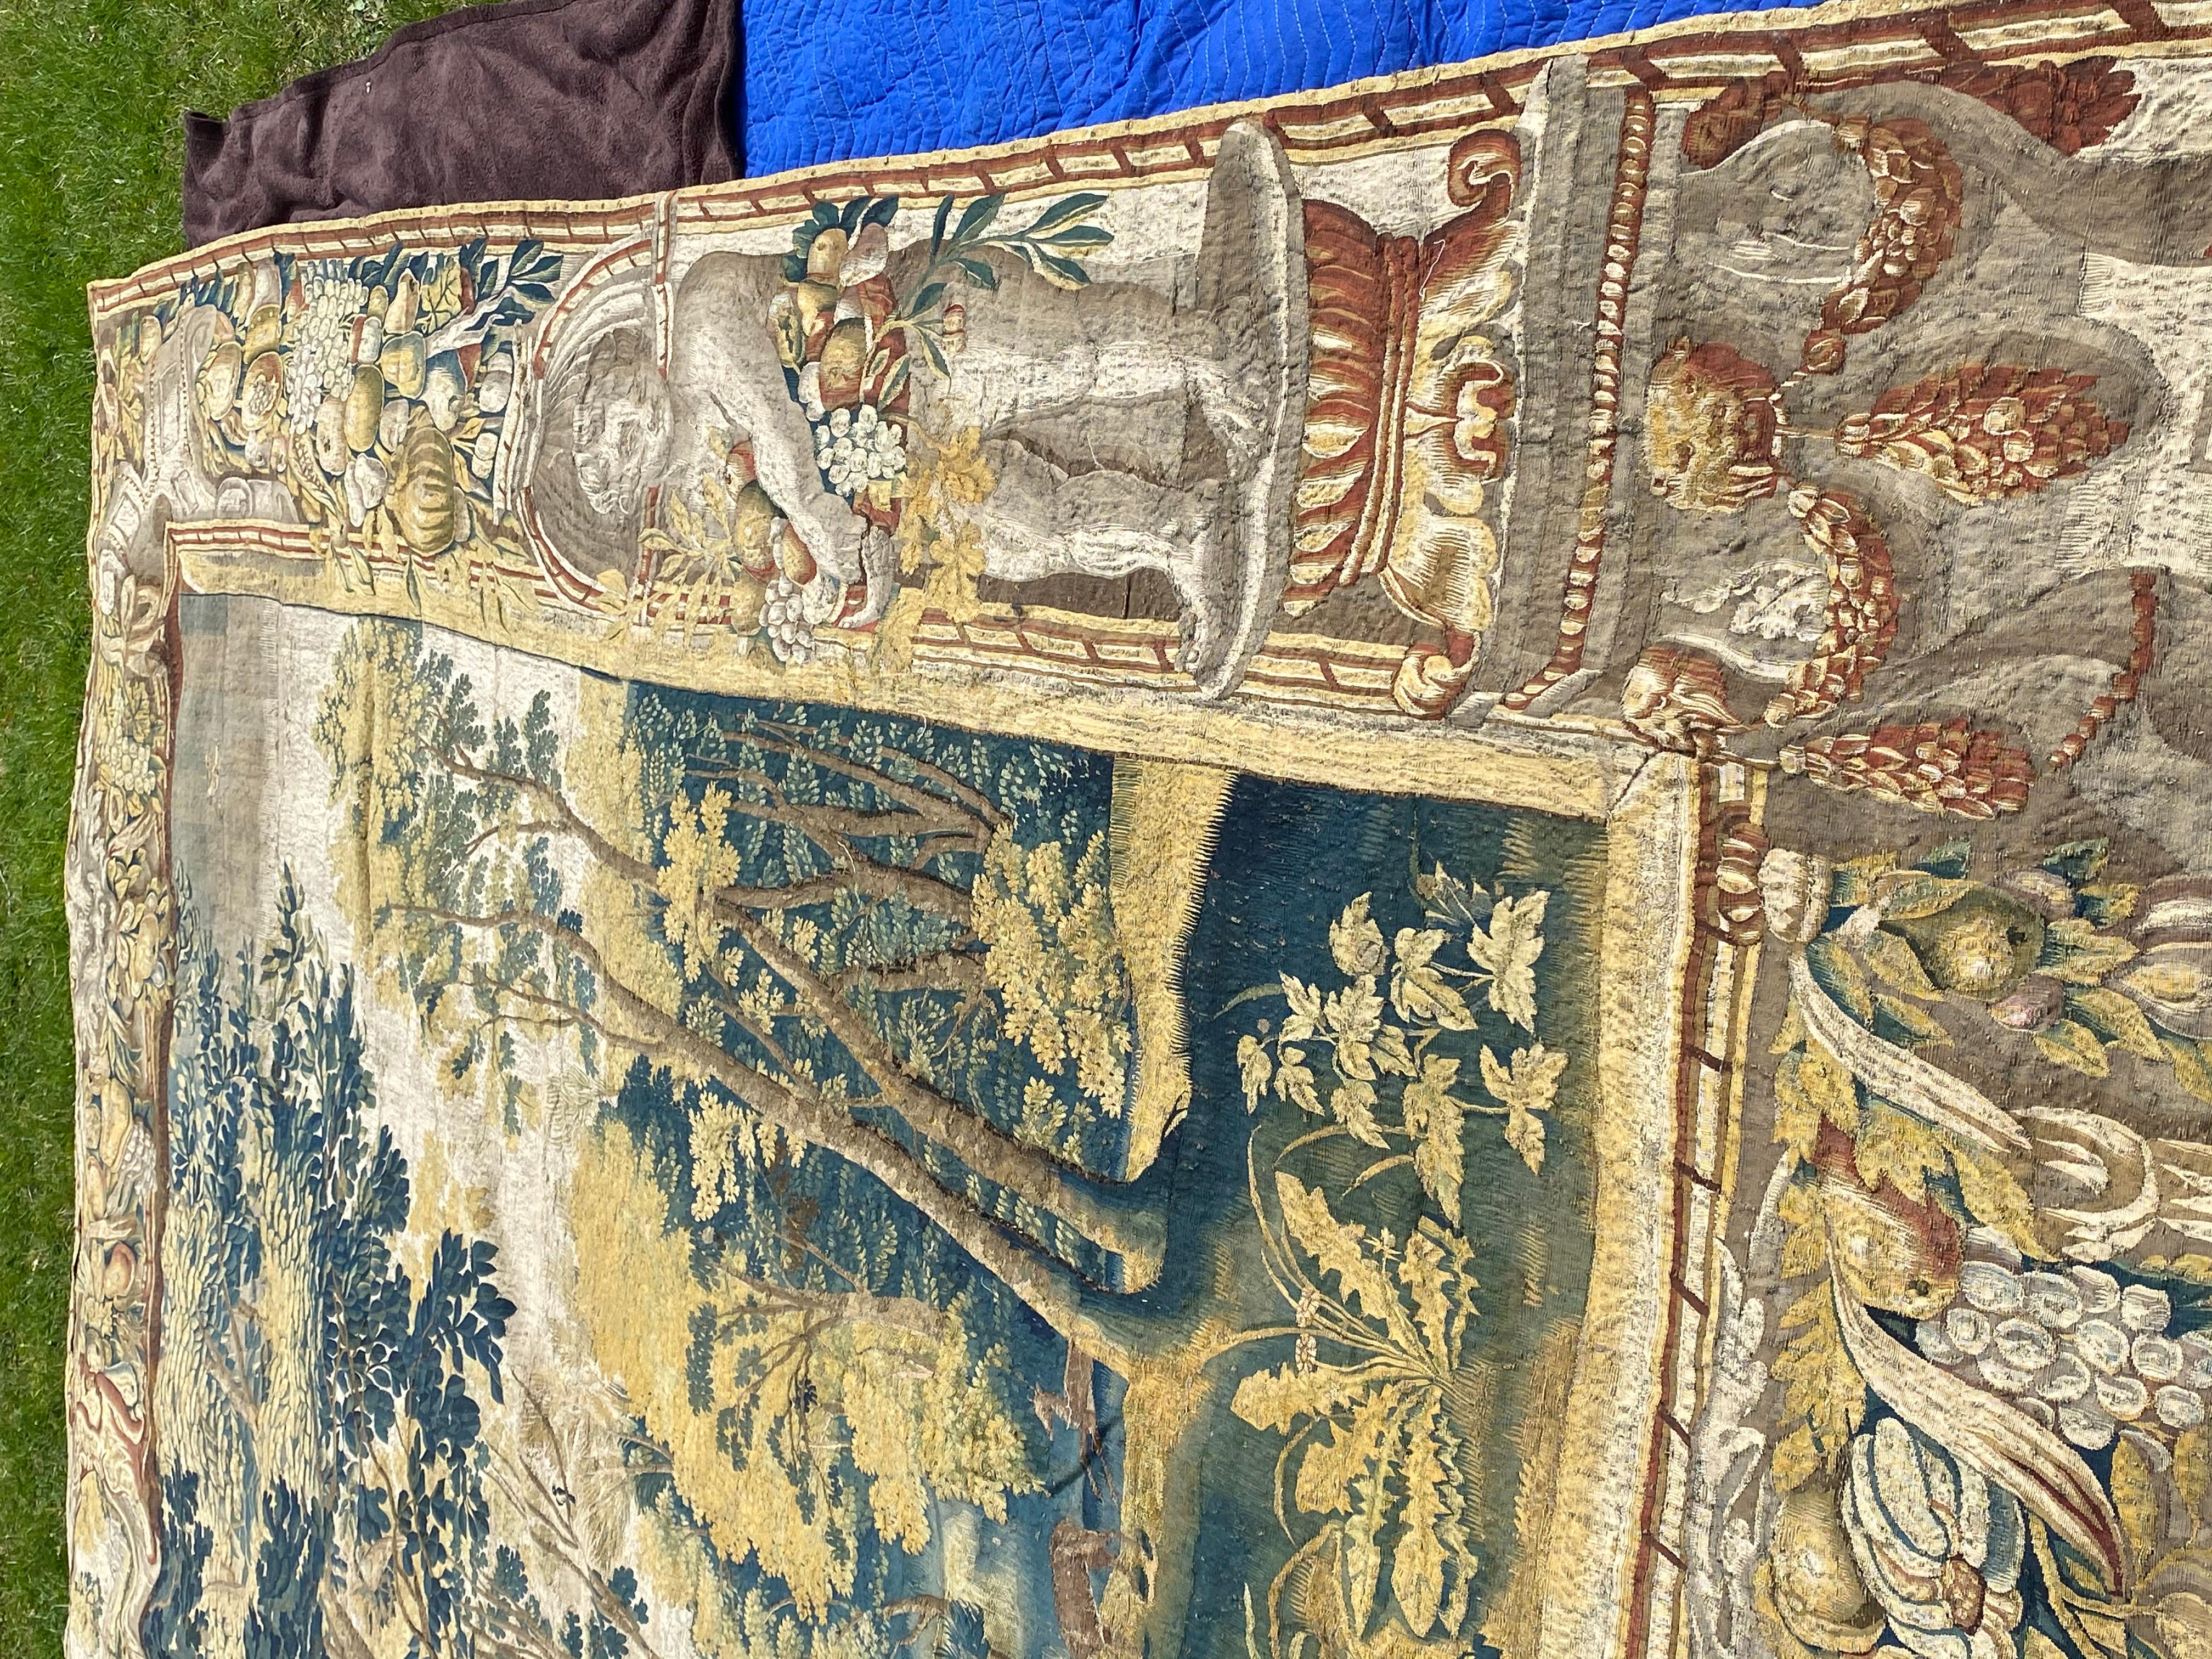 Antique Late 17th Century Antique Franco-Flemish Verdure Landscape Tapestry For Sale 5